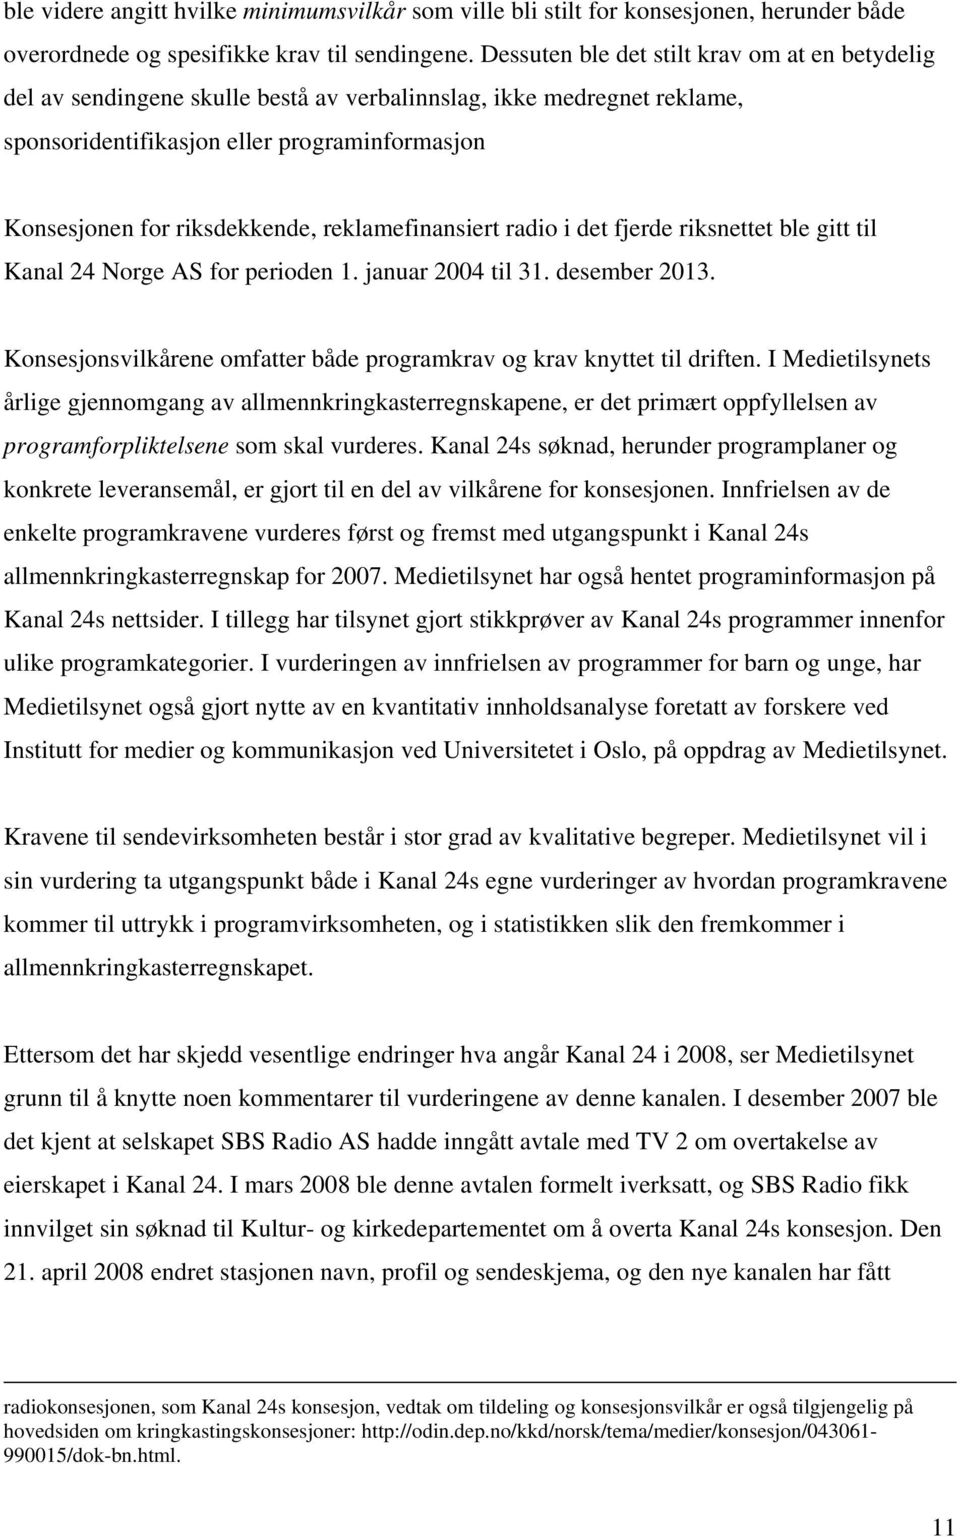 reklamefinansiert radio i det fjerde riksnettet ble gitt til Kanal 24 Norge AS for perioden 1. januar 2004 til 31. desember 2013.